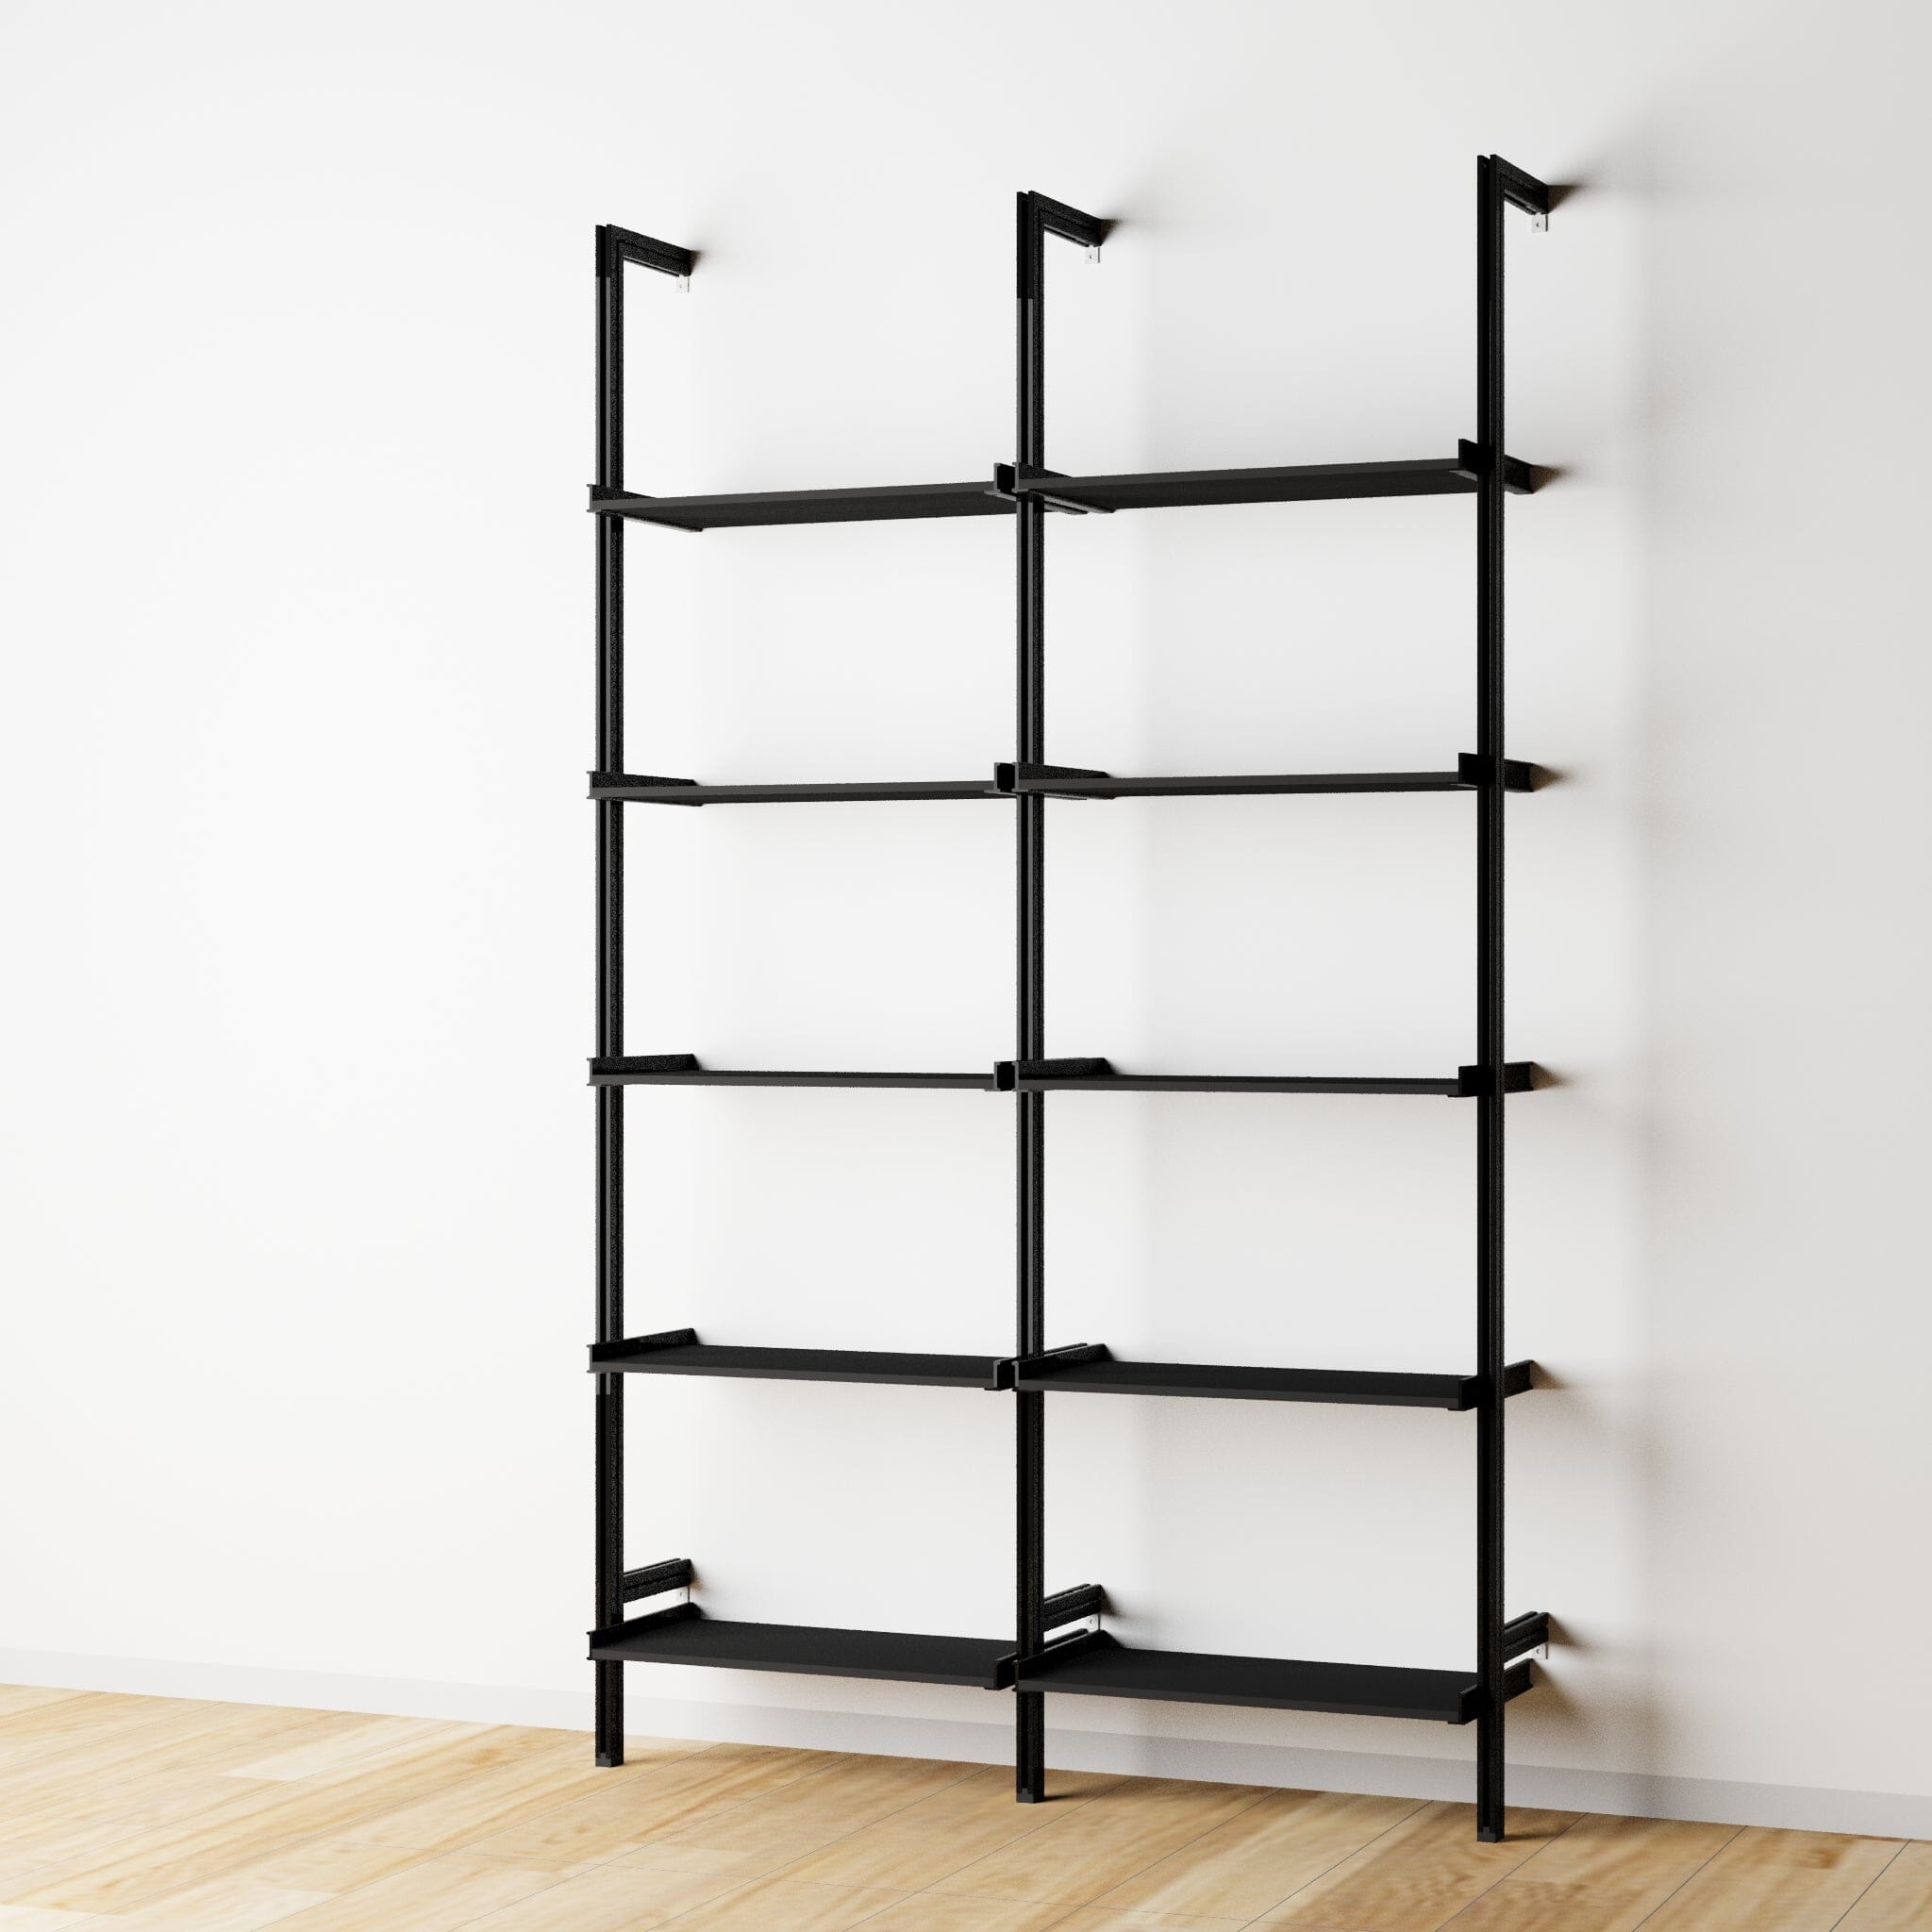 Modular Shelving Units - Wood Shelves